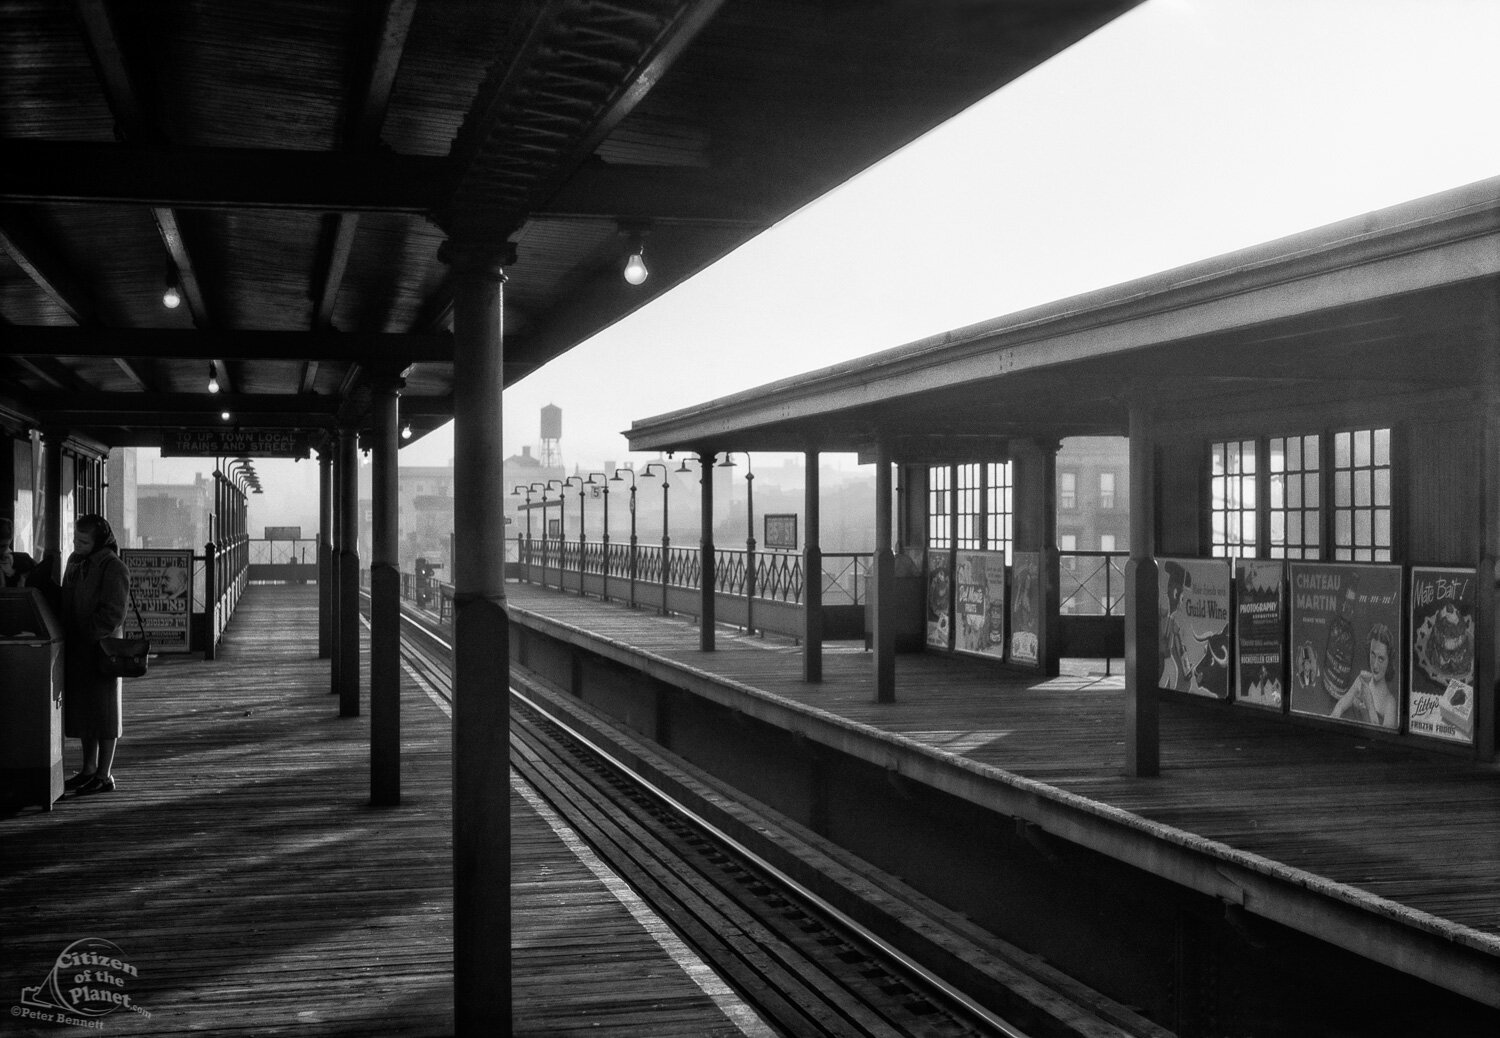 125th Street 3rd Avenue El Station, 1947